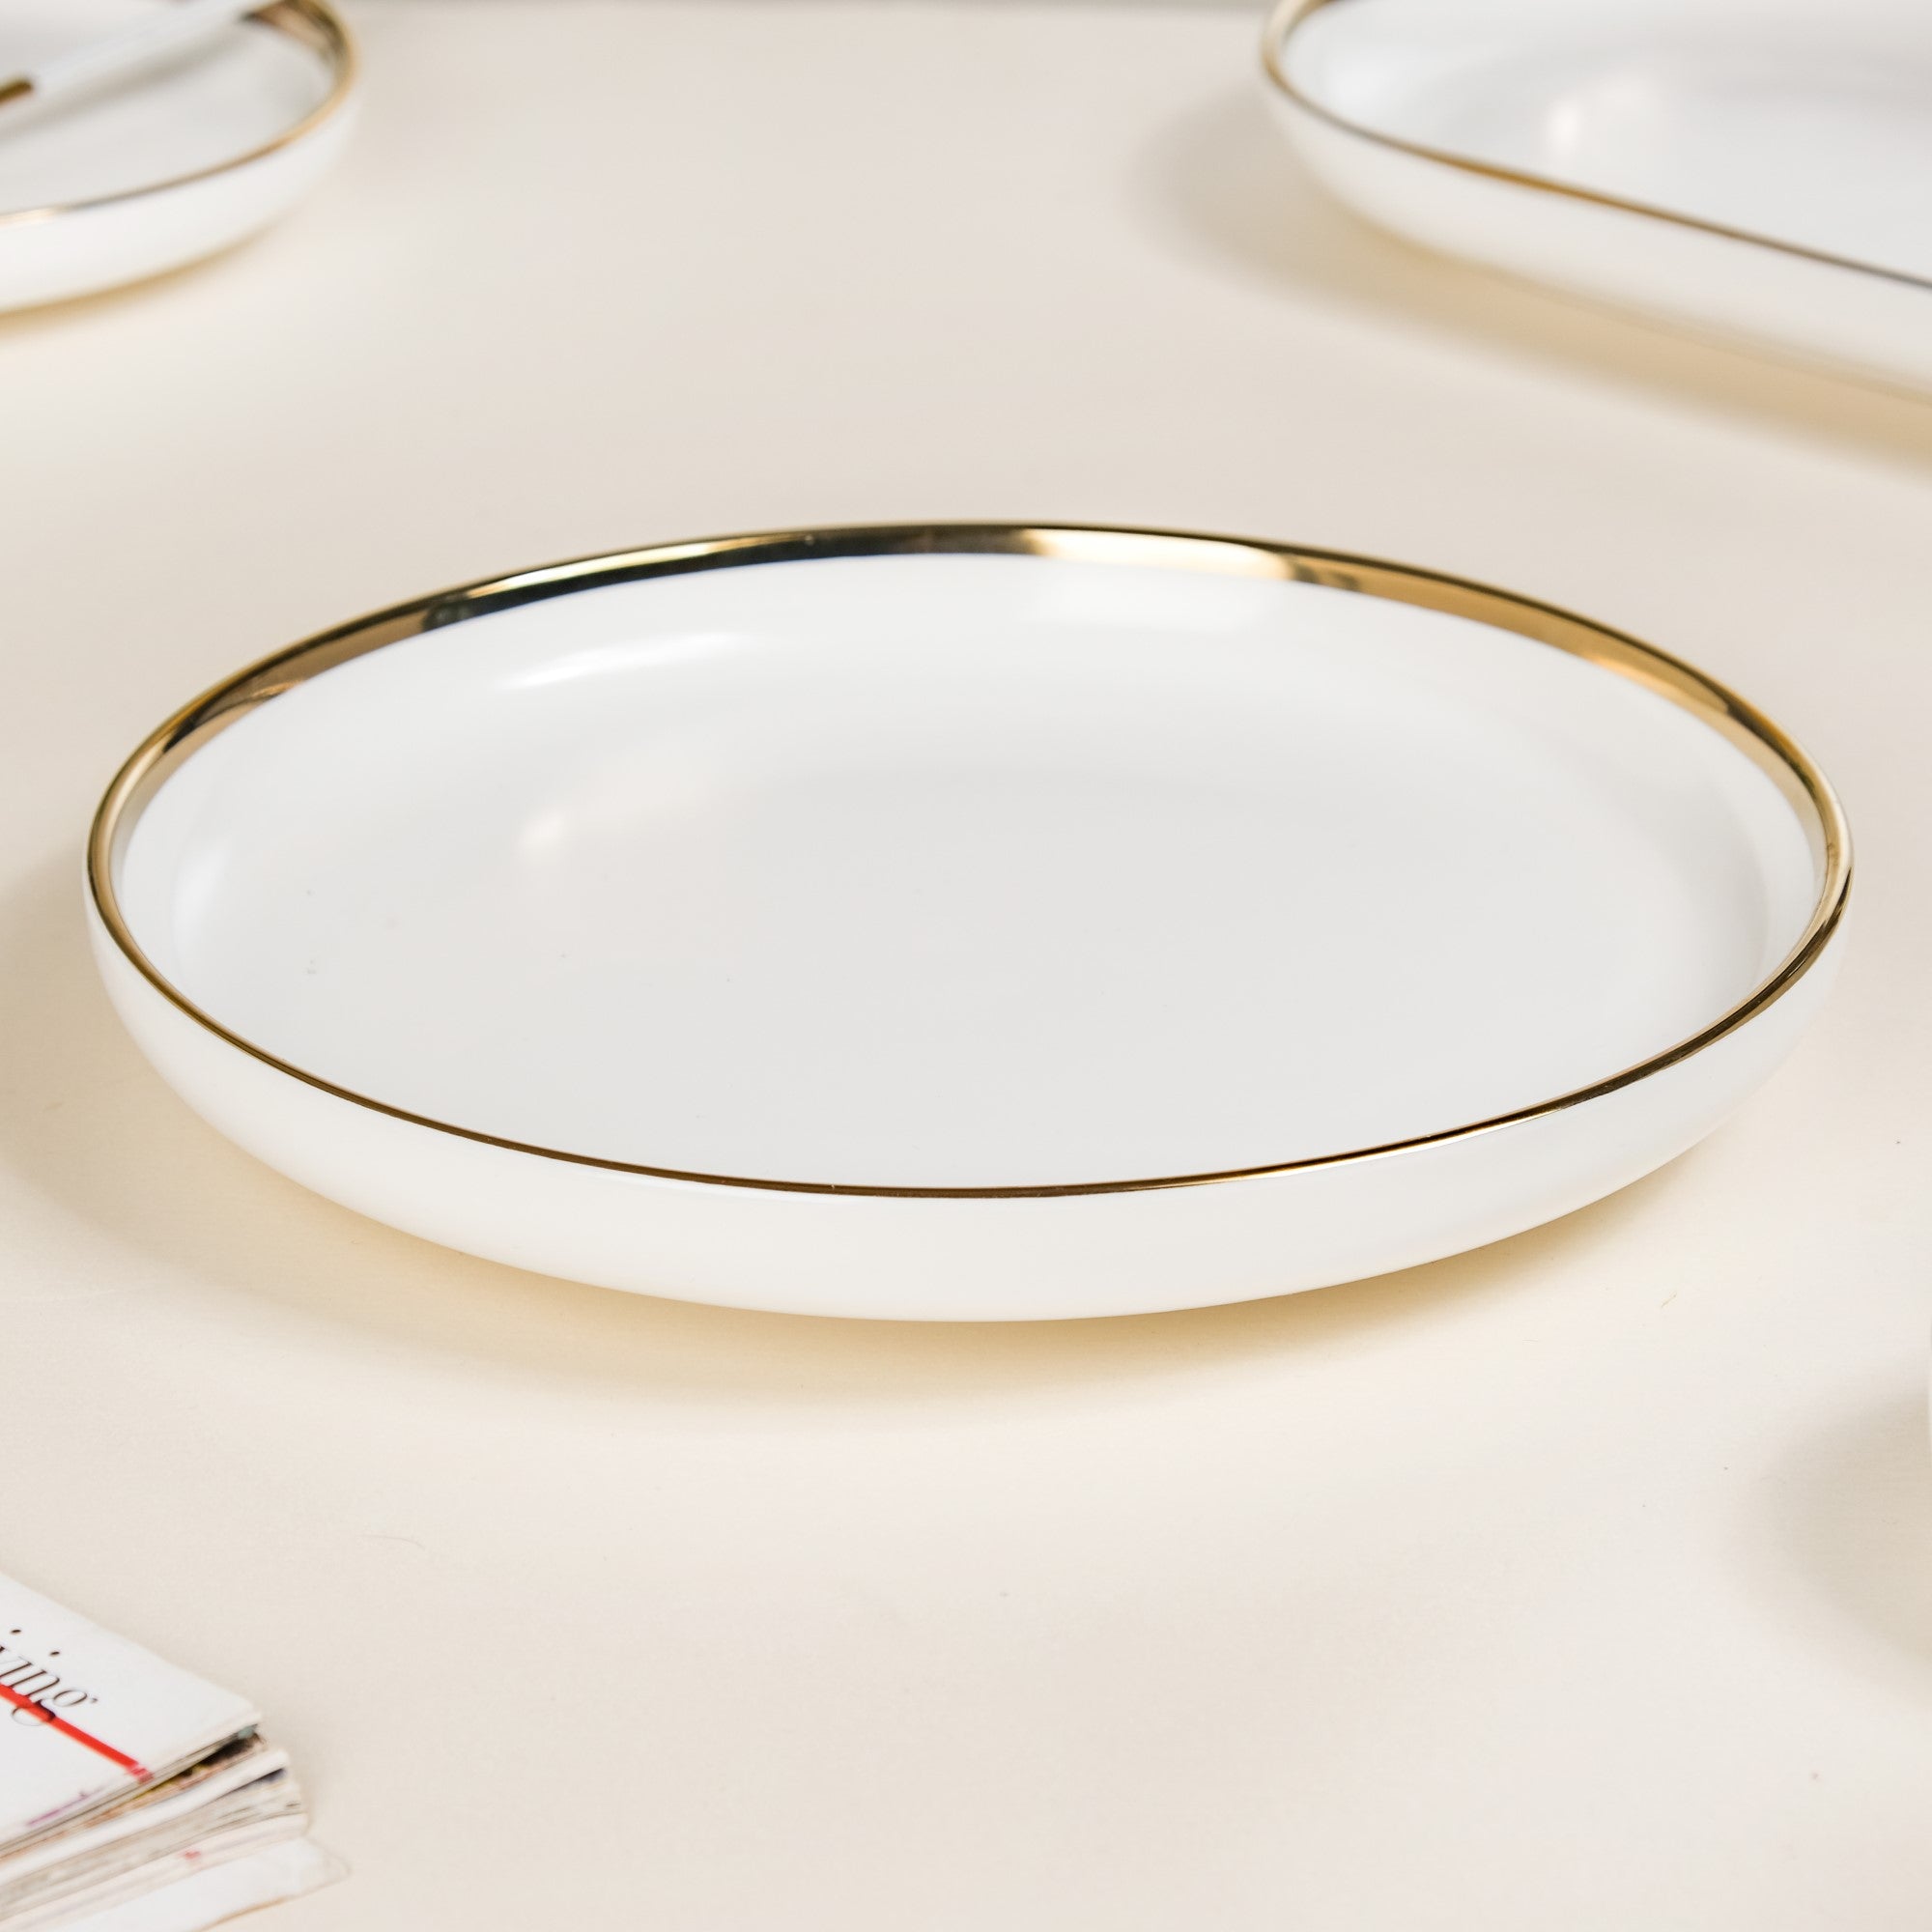 Buy Stylish White Plates Online for Serveware | Nestasia